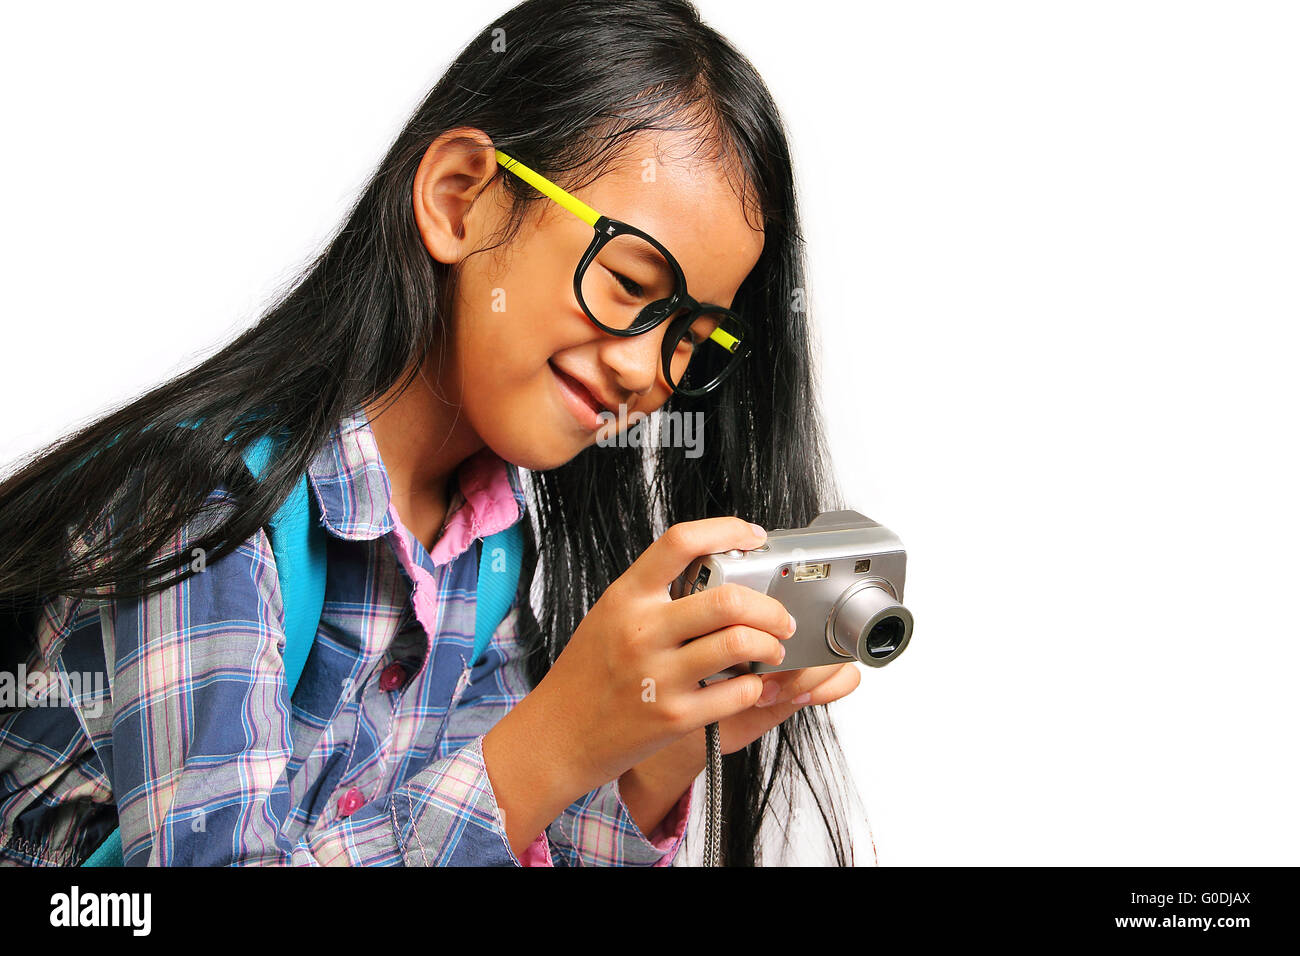 Kleines Mädchen lächelnd während der Einnahme von Foto mit ihrer Kamera isoliert auf weiss Stockfoto